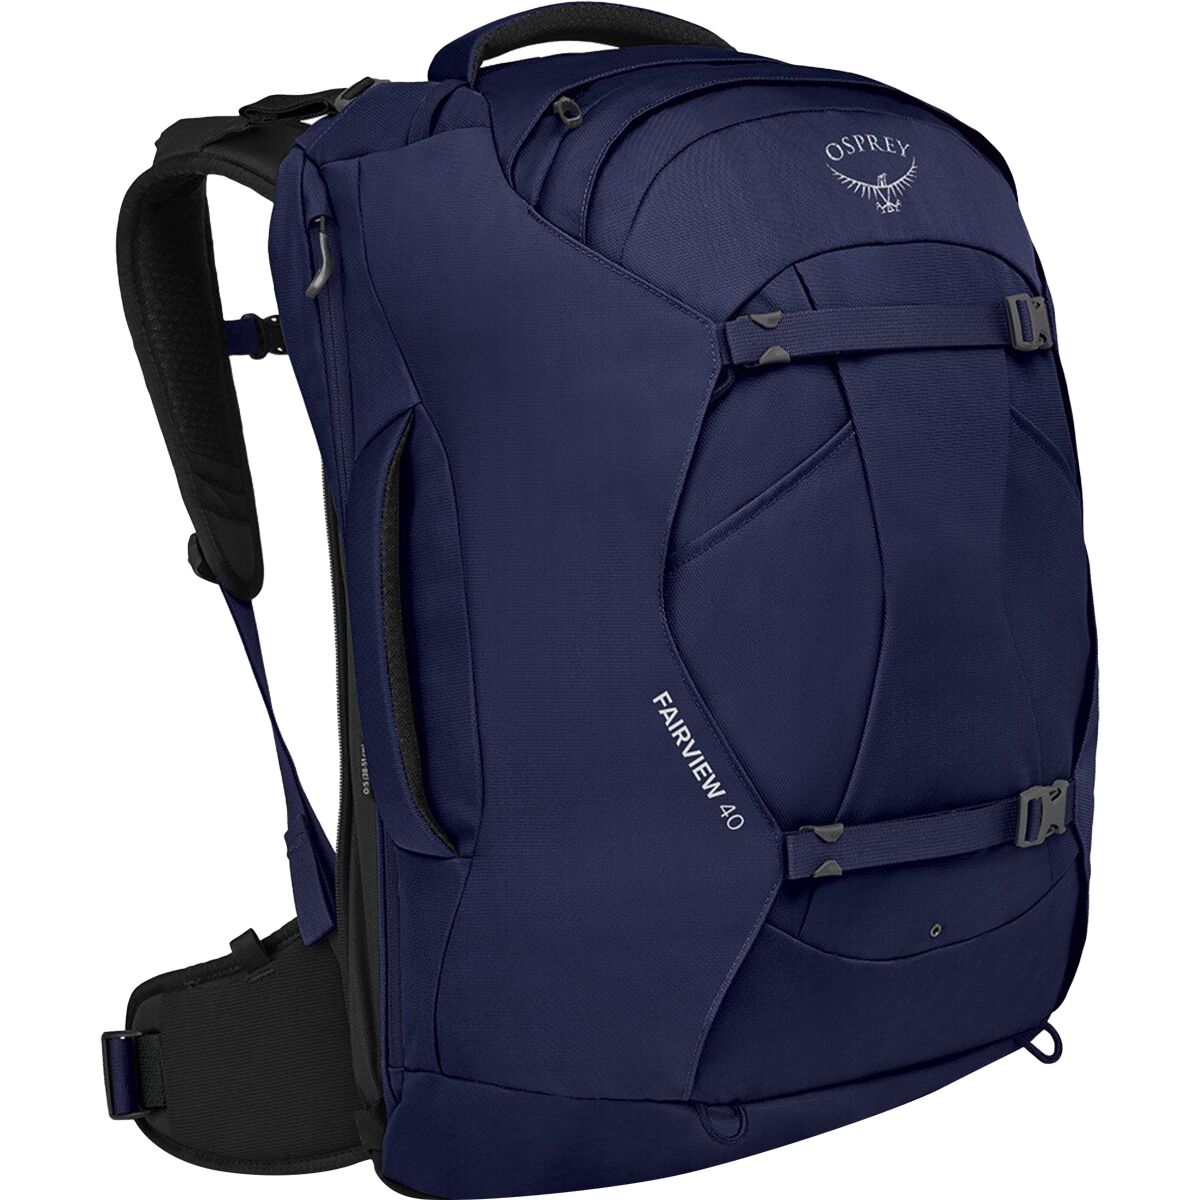 Osprey Packs Fairview 40L Backpack - Women's